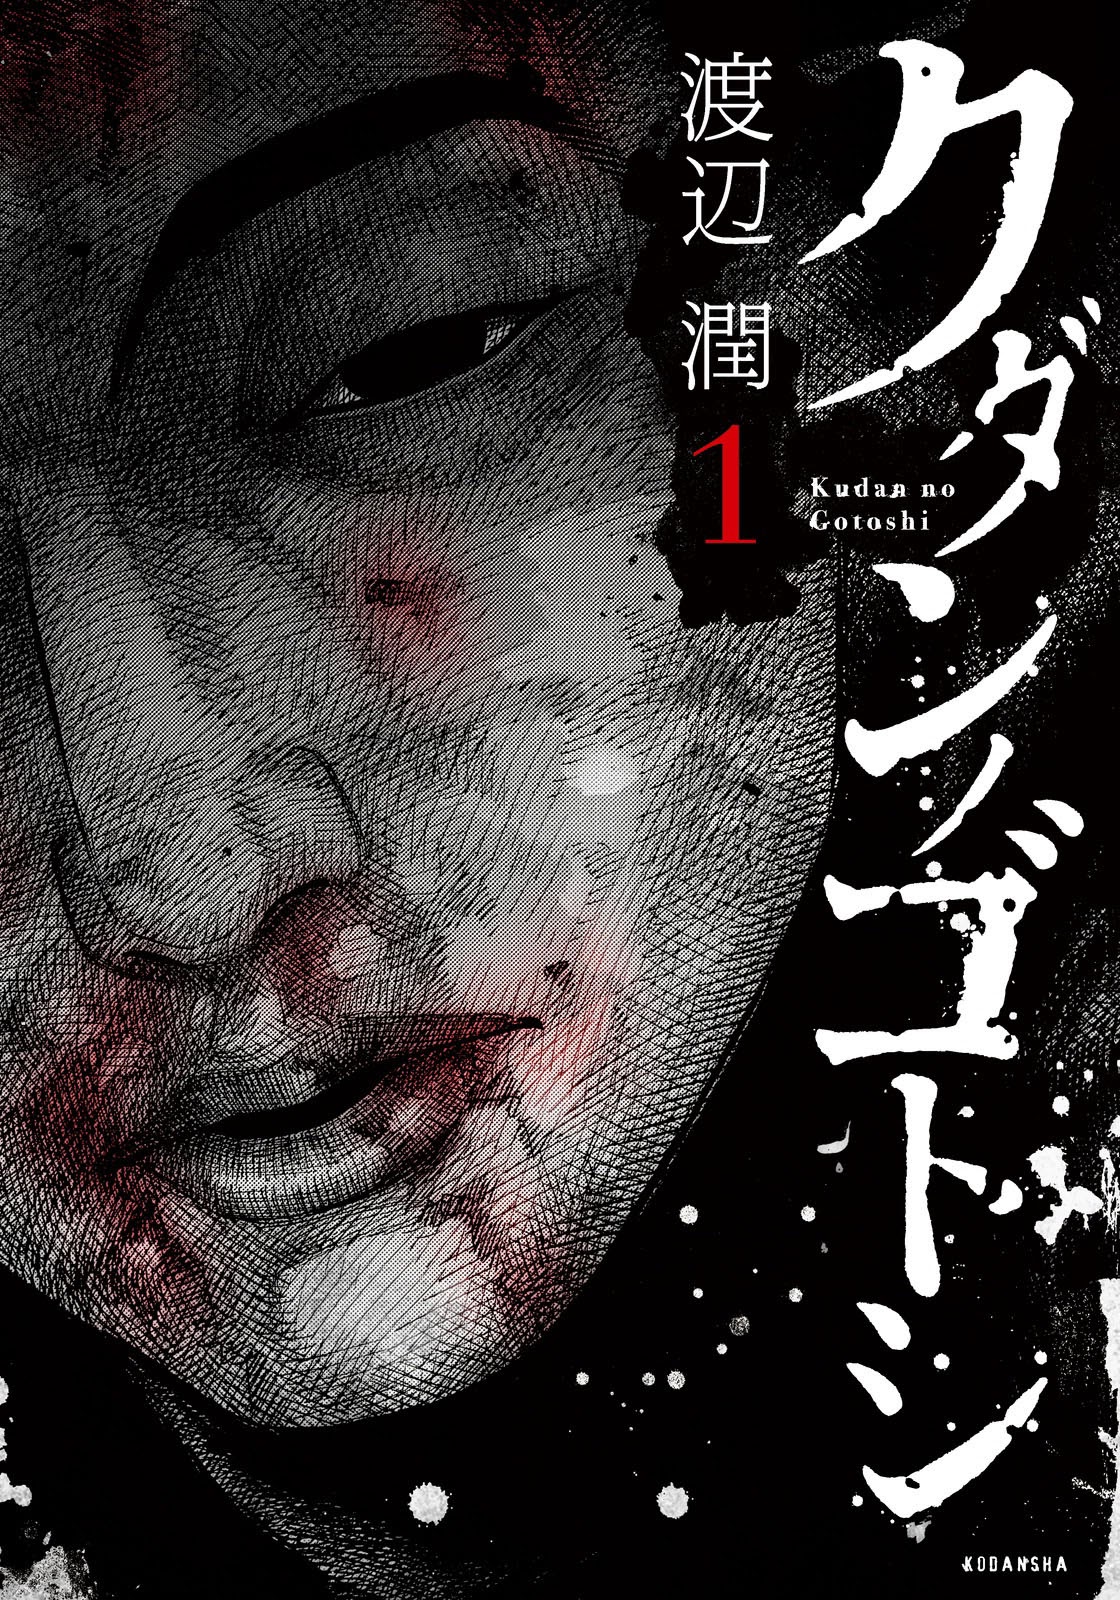 Kudan no Gotoshi Vol. 1 Ch. 5 Ayumi Baba < Part 2 >